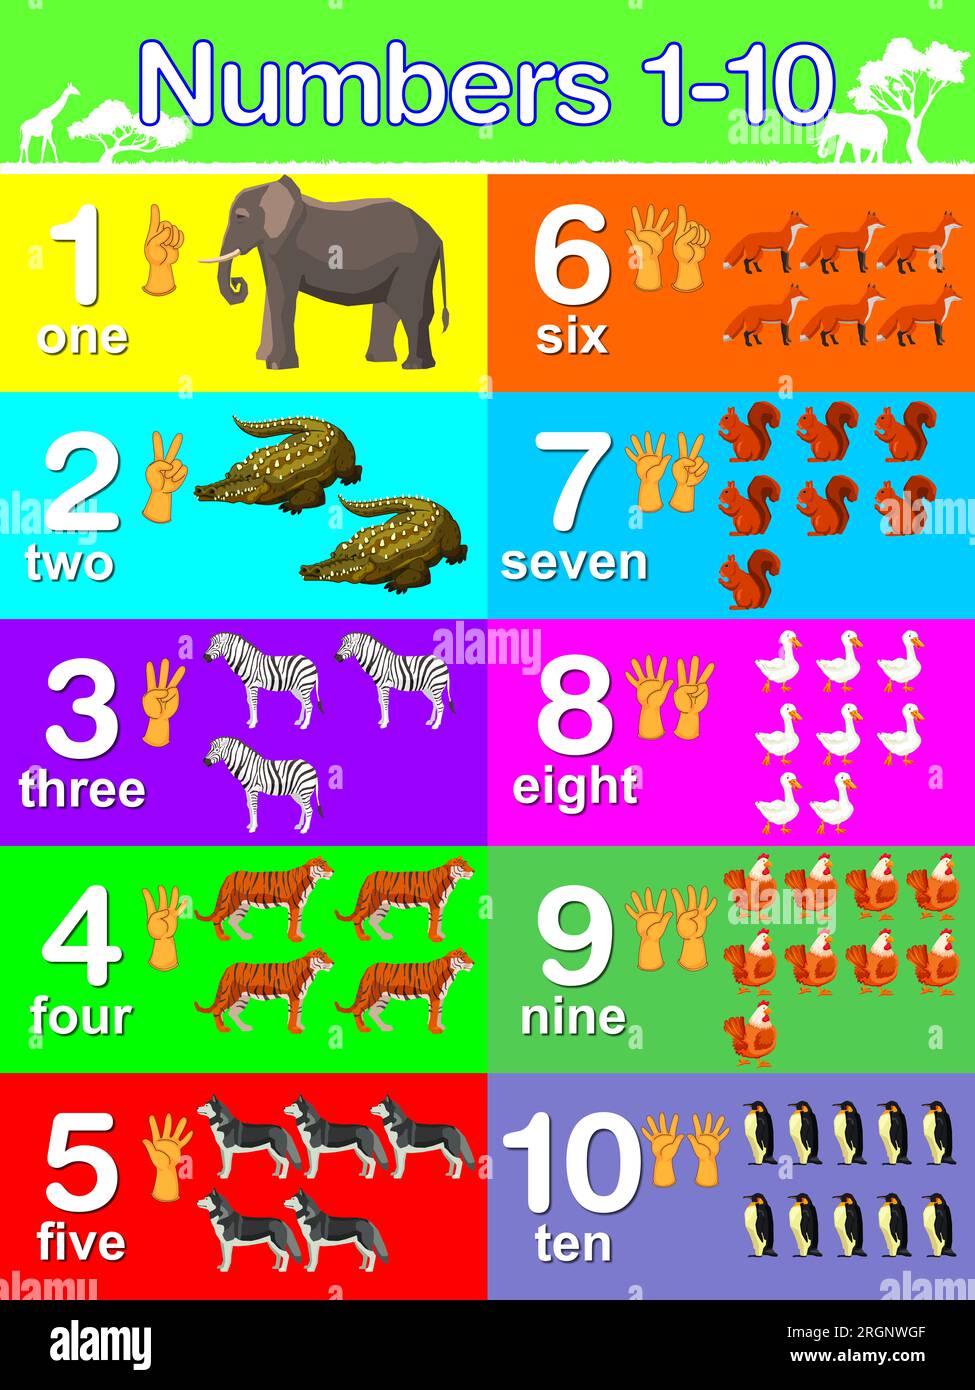 Poster didattico da parete per bambini, numeri 1-10 con gesti delle mani e numero di animali. Poster colorato e accattivante. Foto Stock